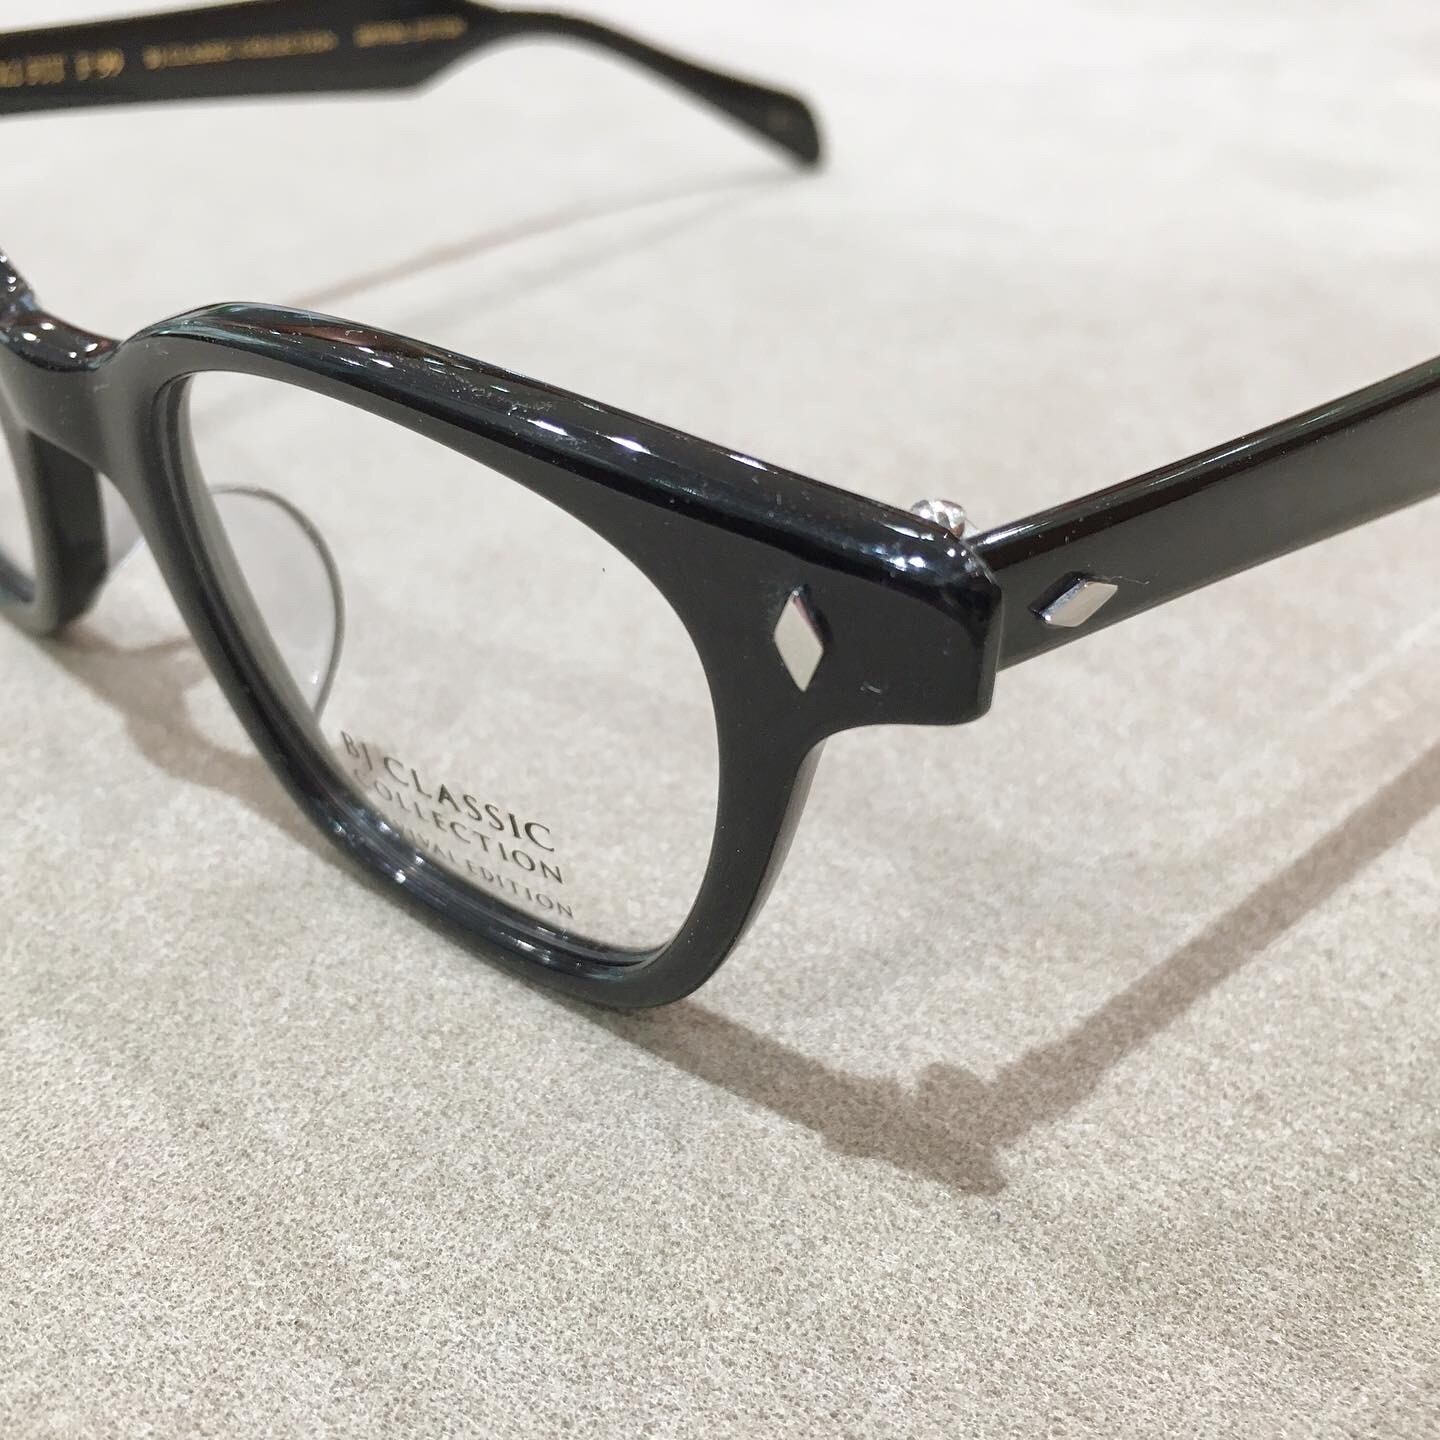 【BJ CLASSIC 新作！】1900年代のセルロイド製メガネを完全復刻！